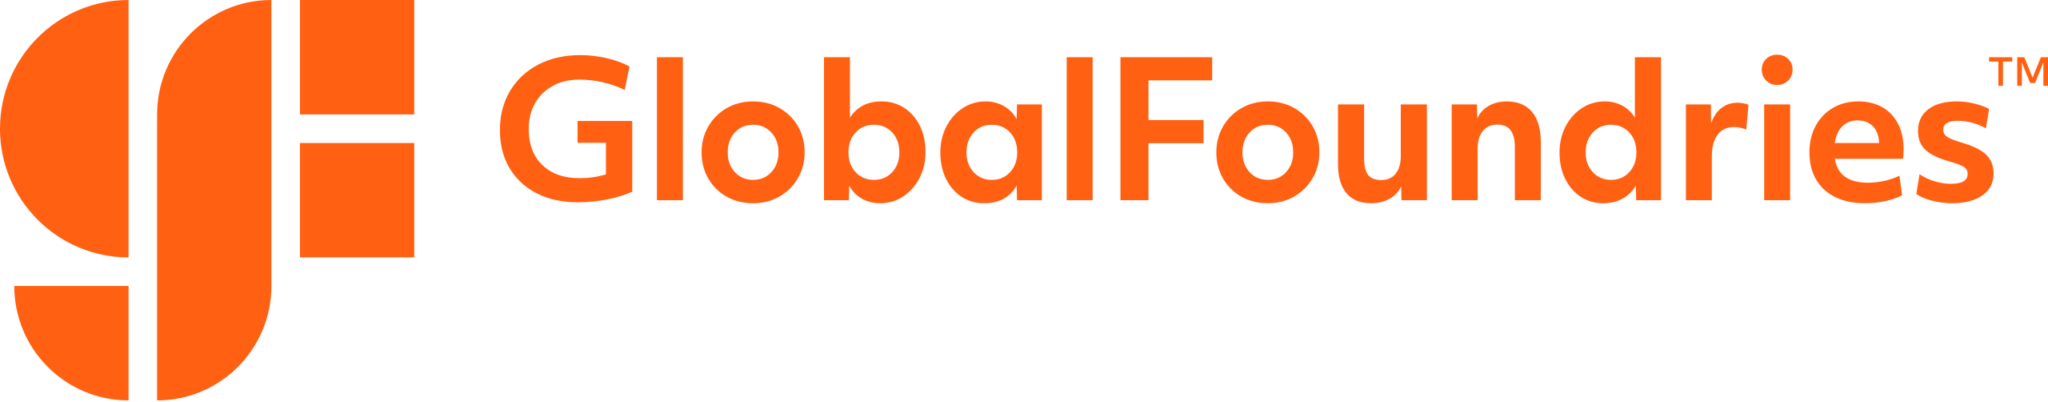 GlobalFoundries - General Sponsor